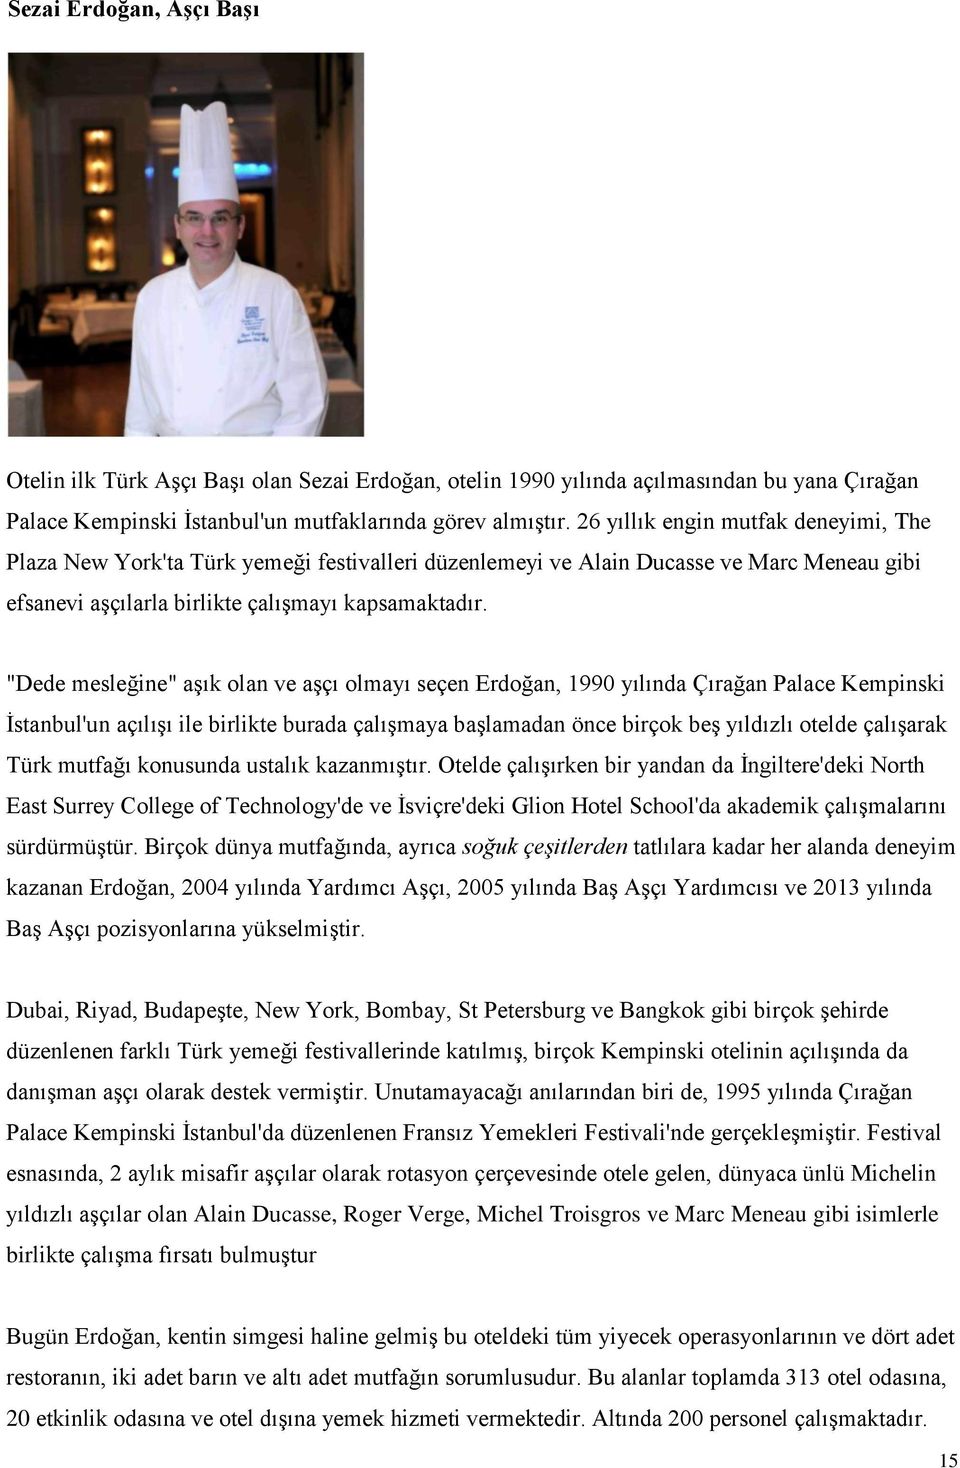 "Dede mesleğine" aşık olan ve aşçı olmayı seçen Erdoğan, 1990 yılında Çırağan Palace Kempinski İstanbul'un açılışı ile birlikte burada çalışmaya başlamadan önce birçok beş yıldızlı otelde çalışarak